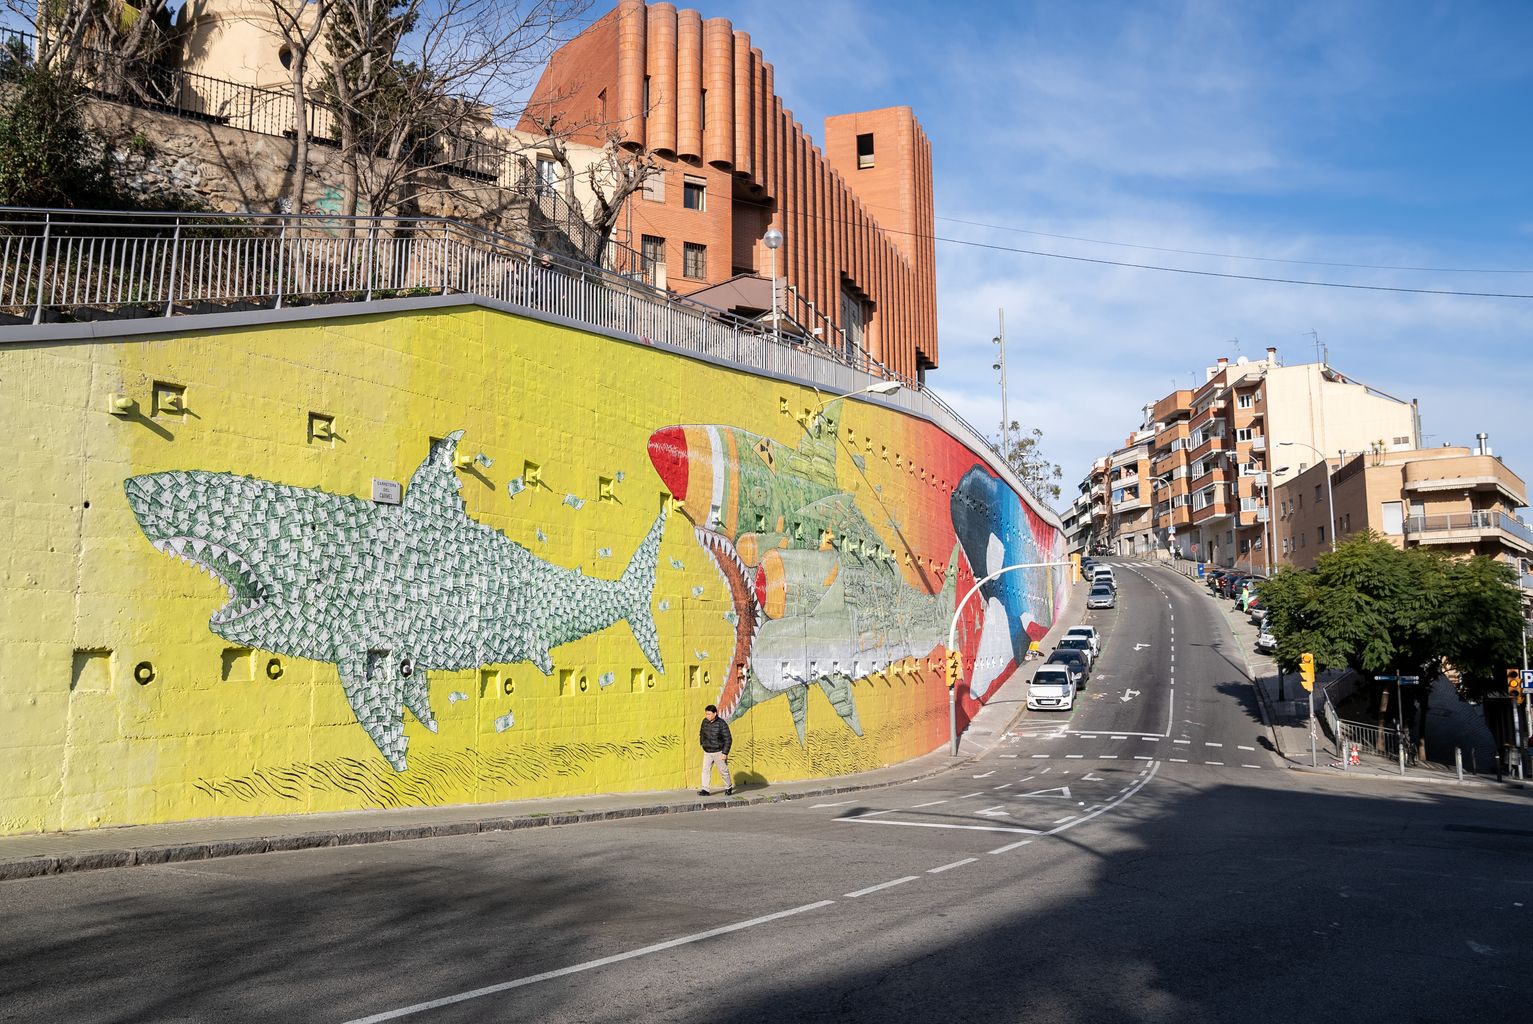 Nuevo mural del artista italiano BLU en el barrio del Carmel de Barcelona, que representa un tiburón hecho de billetes (capitalista) a punto de ser devorado por un tiburón con elementos bélicos, que al mismo tiempo está a punto de ser devorado por una orca que representa el cambio climático.